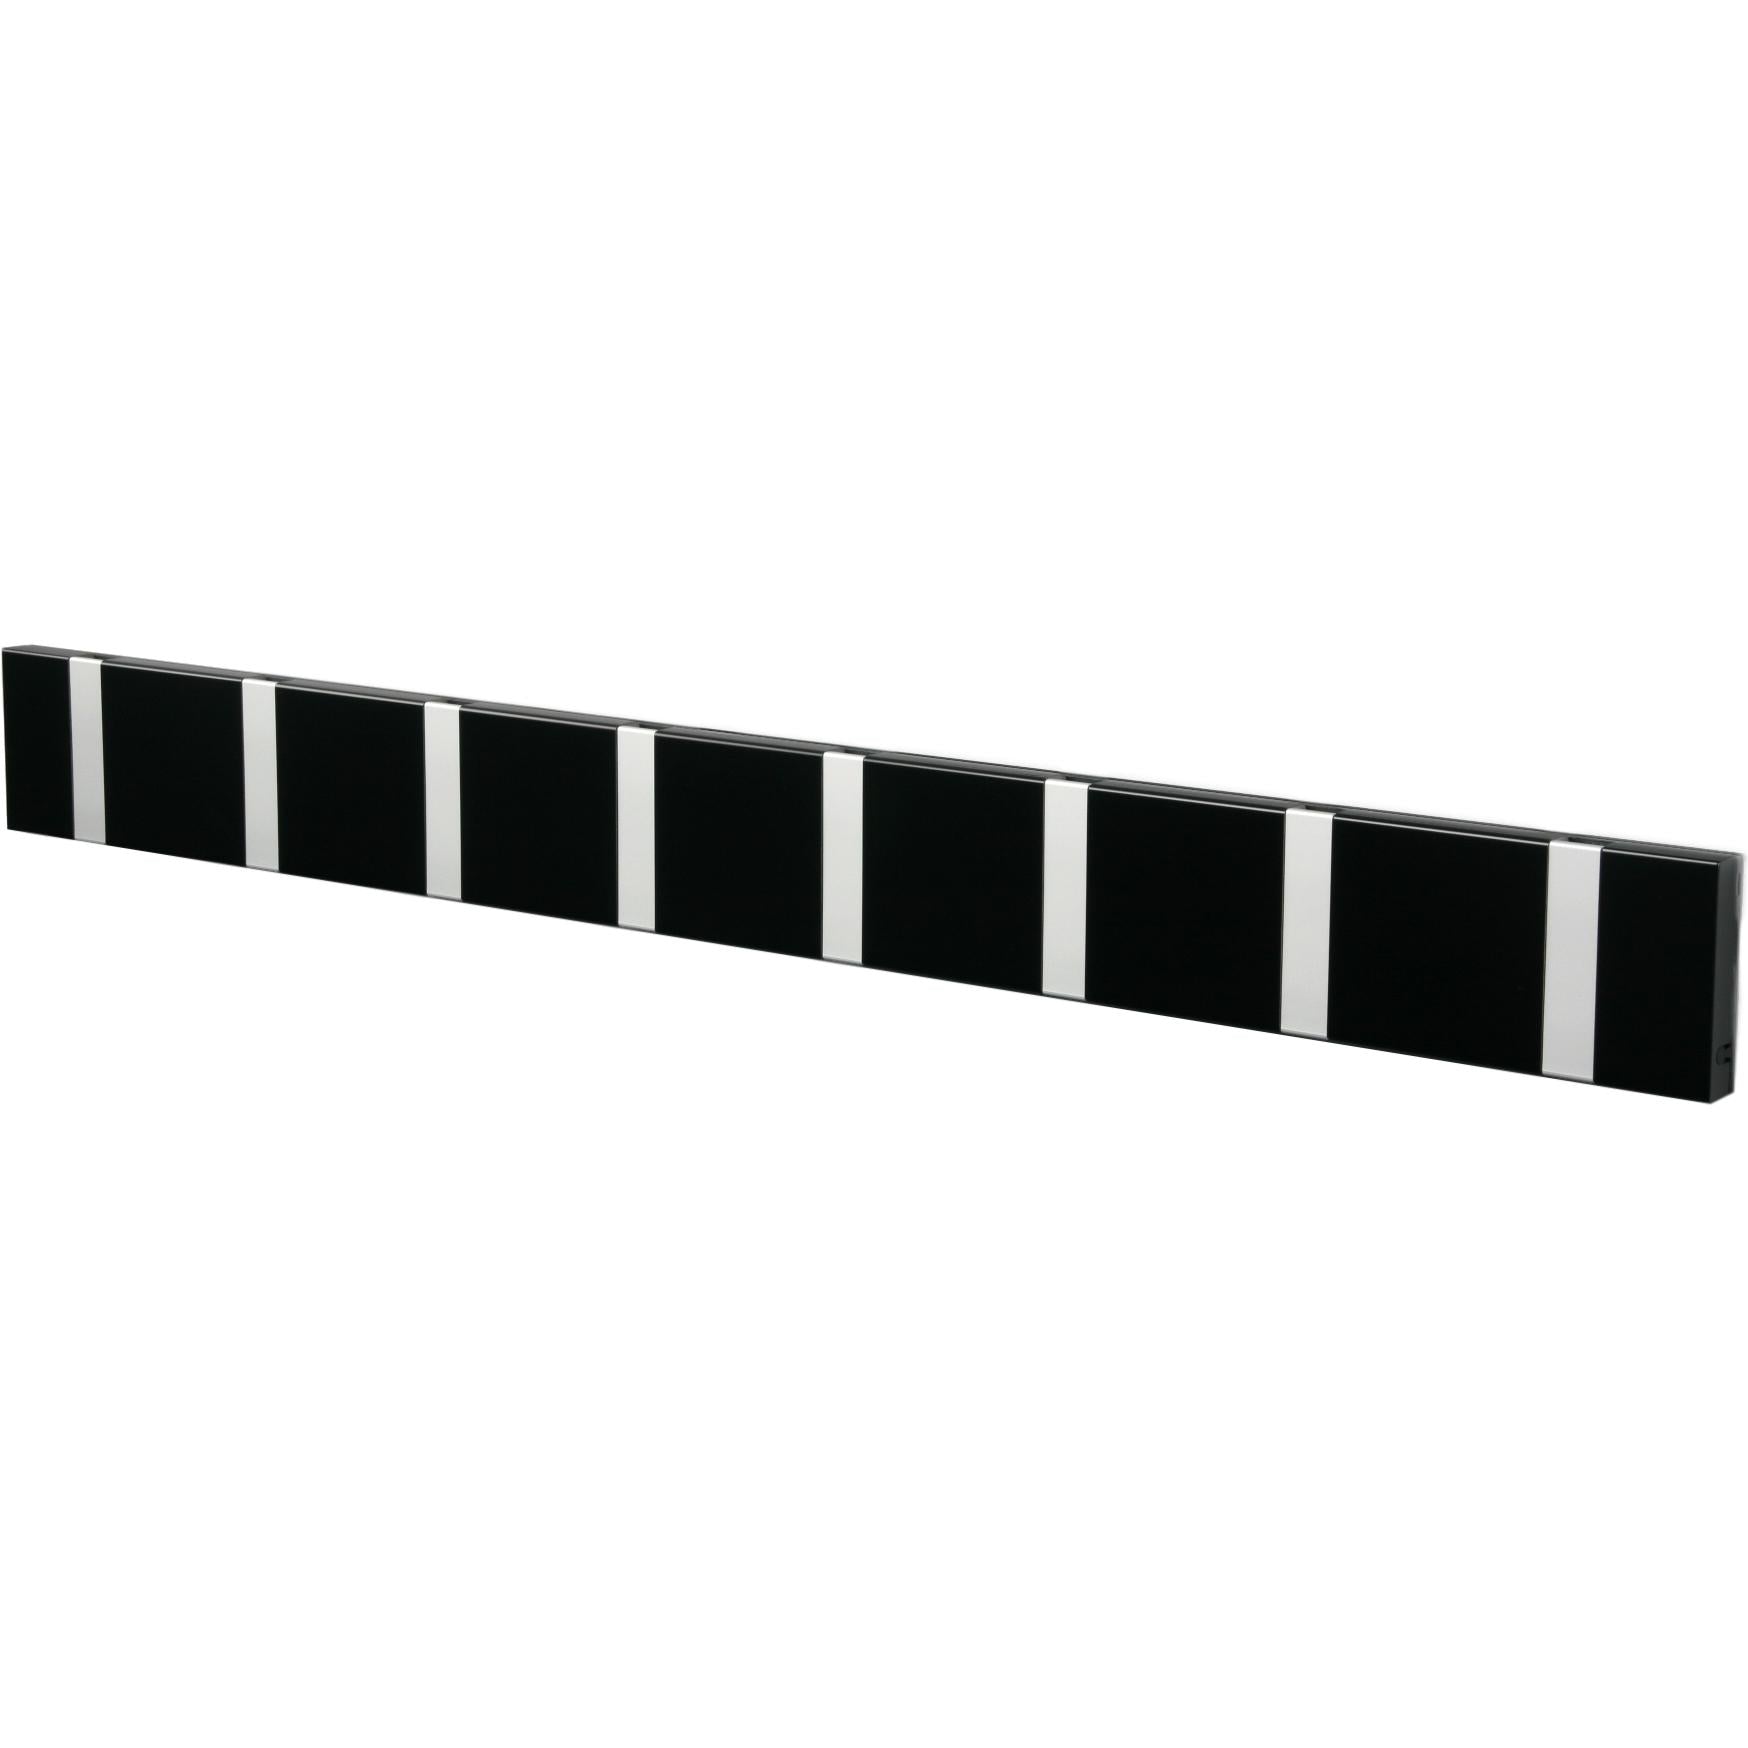 Horizontální stojan na loca knax 8 háčků, černá/šedá